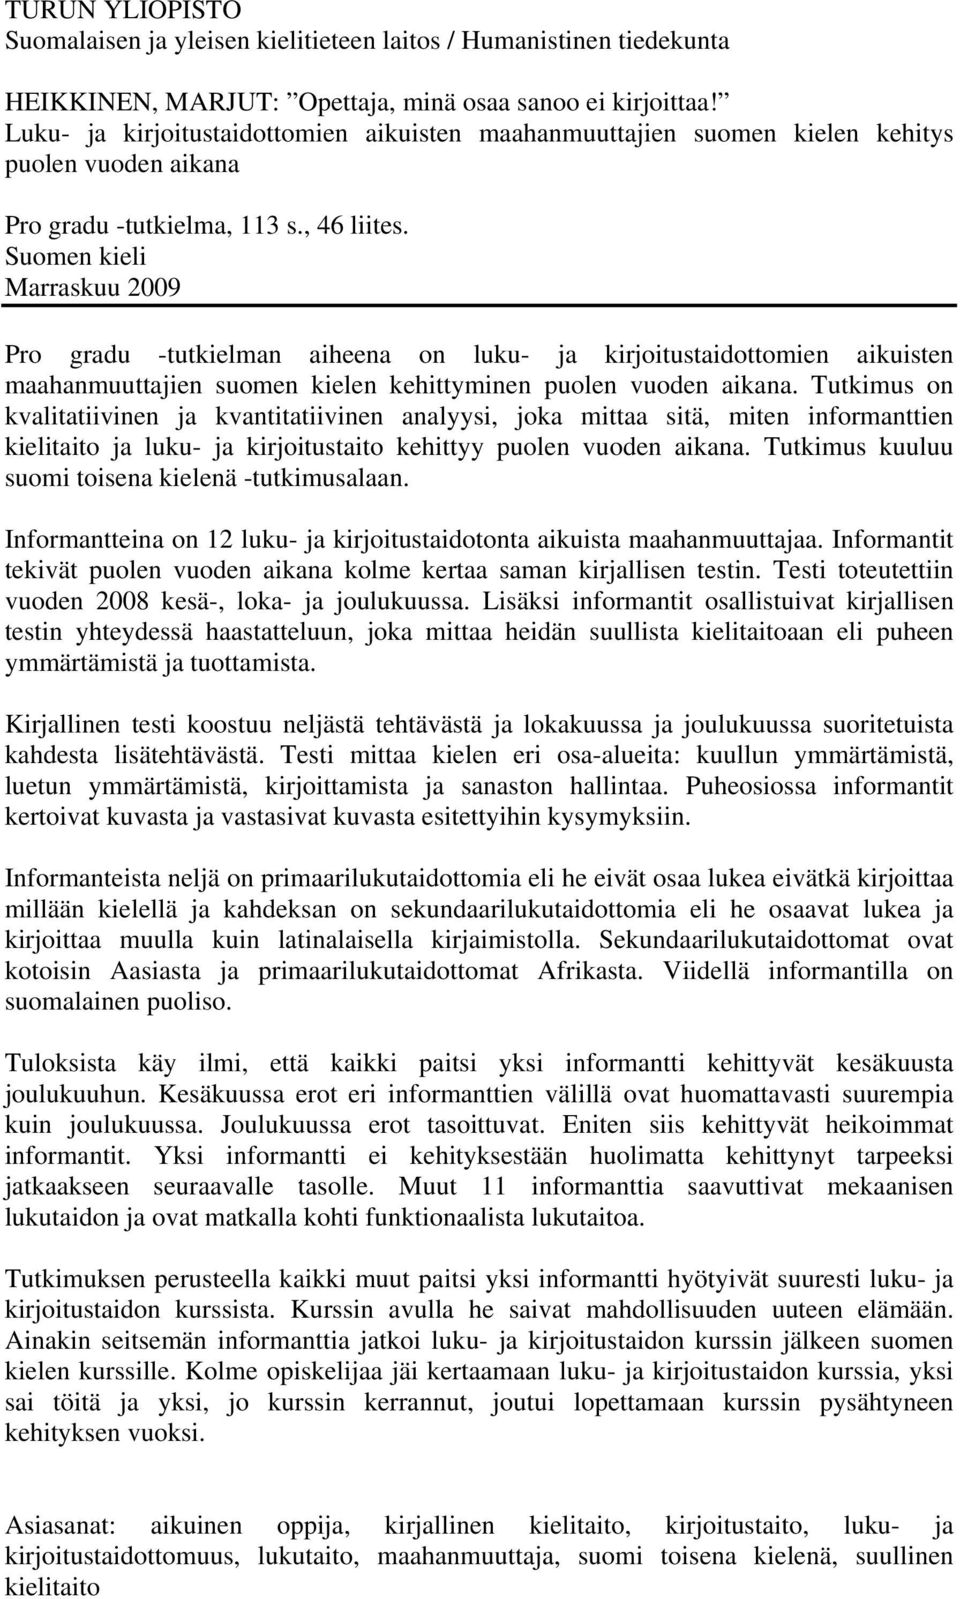 Suomen kieli Marraskuu 2009 Pro gradu -tutkielman aiheena on luku- ja kirjoitustaidottomien aikuisten maahanmuuttajien suomen kielen kehittyminen puolen vuoden aikana.